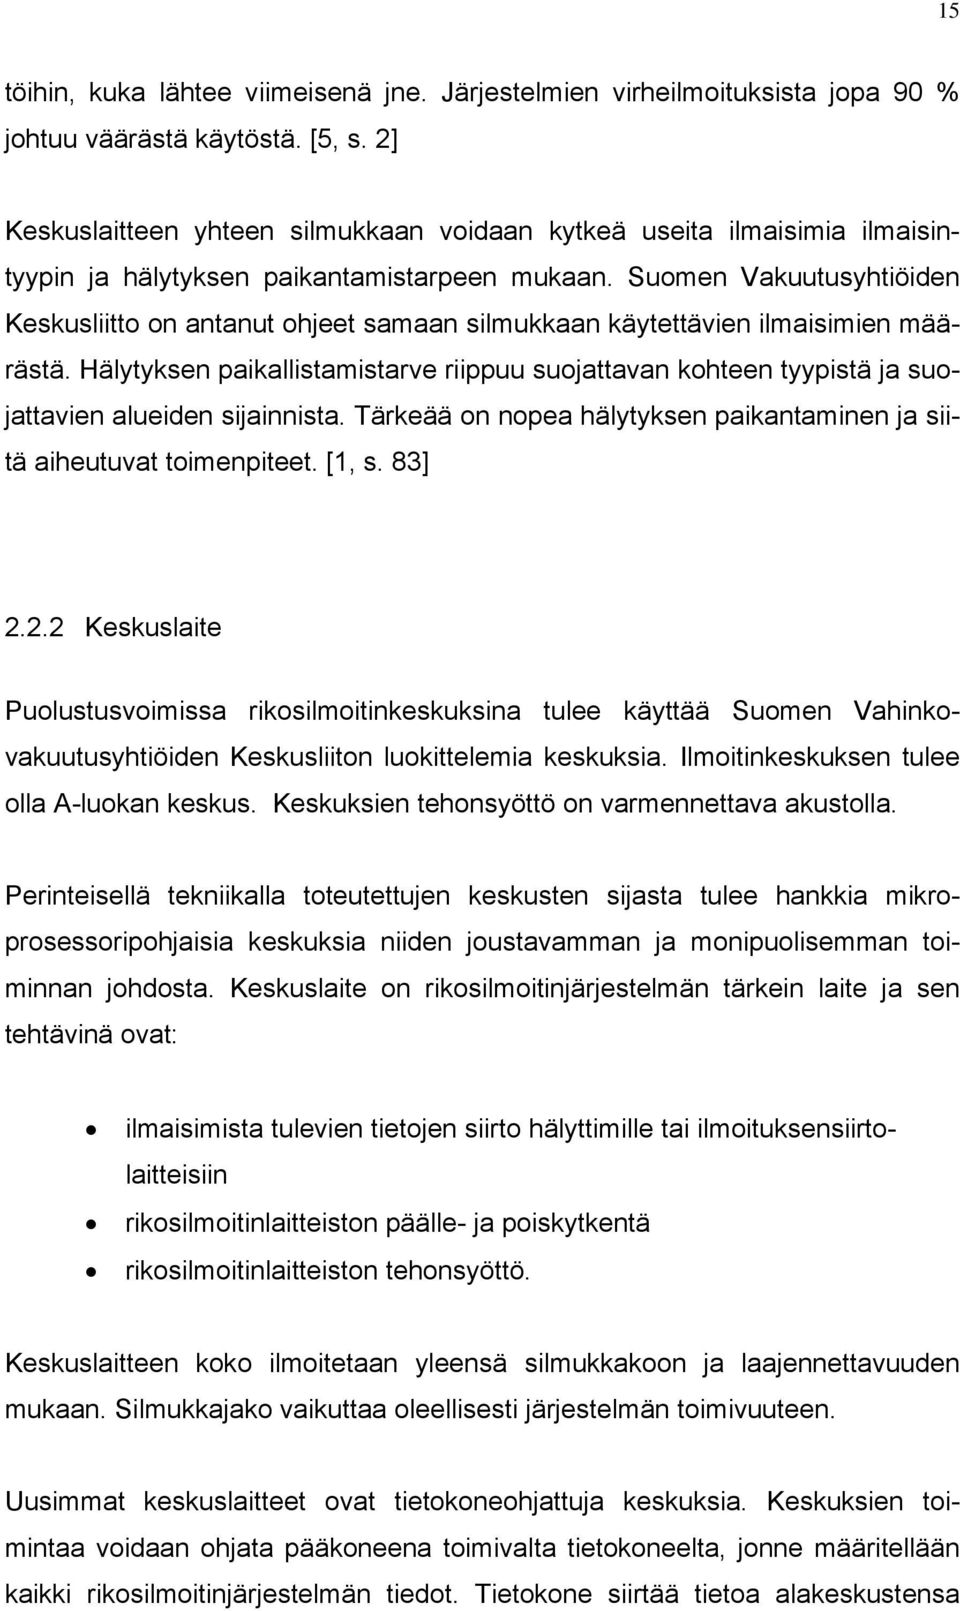 Suomen Vakuutusyhtiöiden Keskusliitto on antanut ohjeet samaan silmukkaan käytettävien ilmaisimien määrästä.